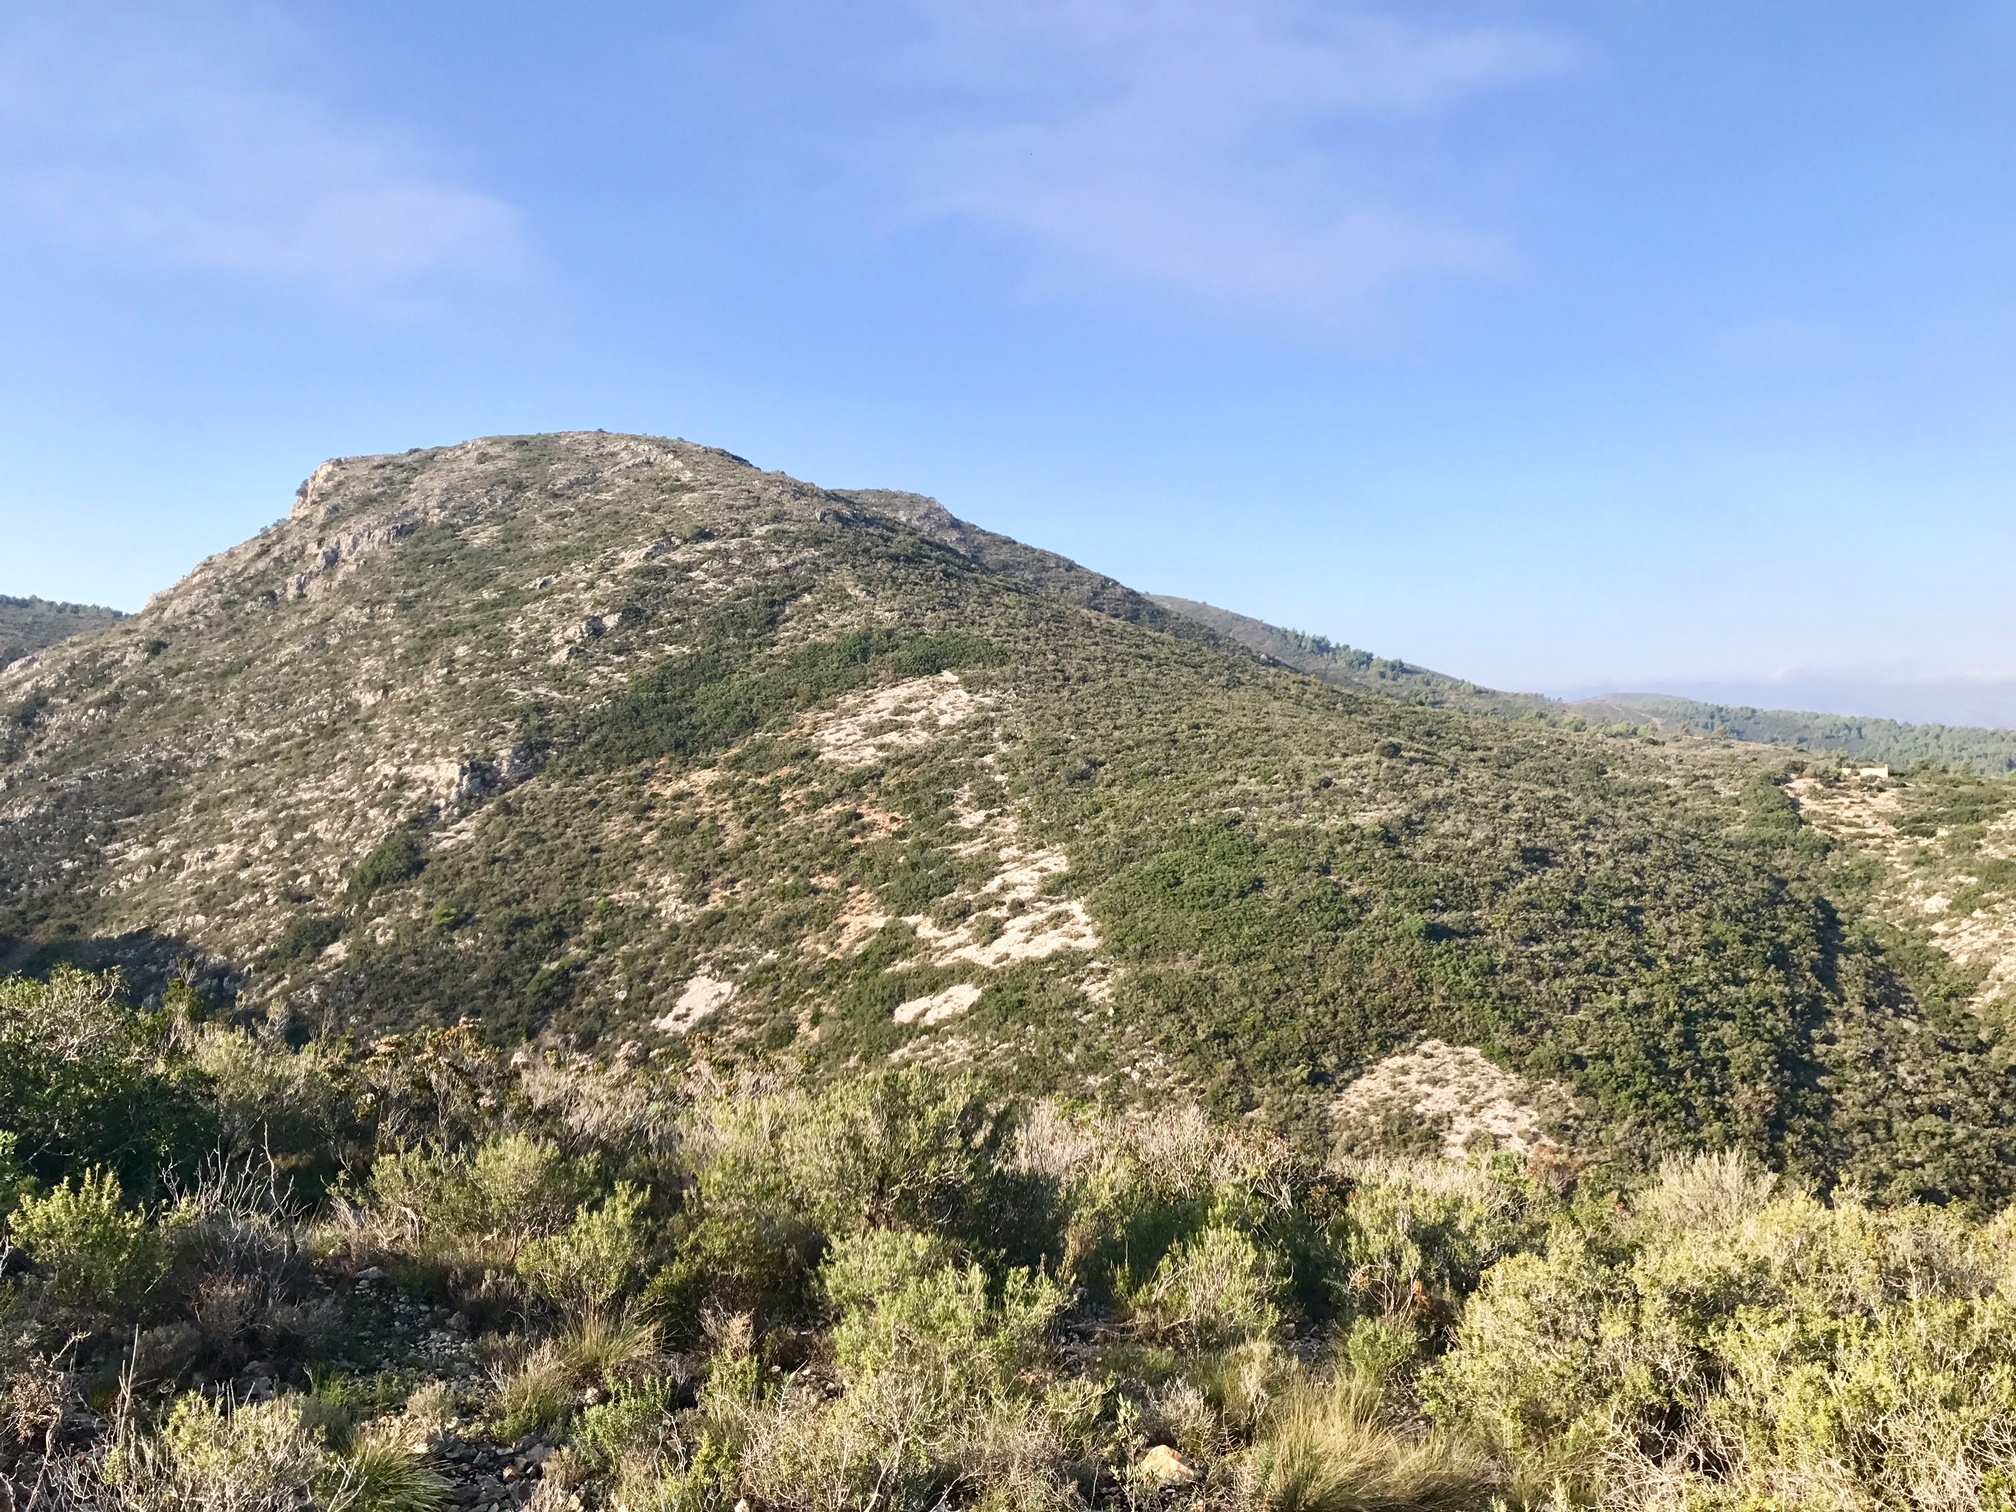 View from approach to Azagador ridge